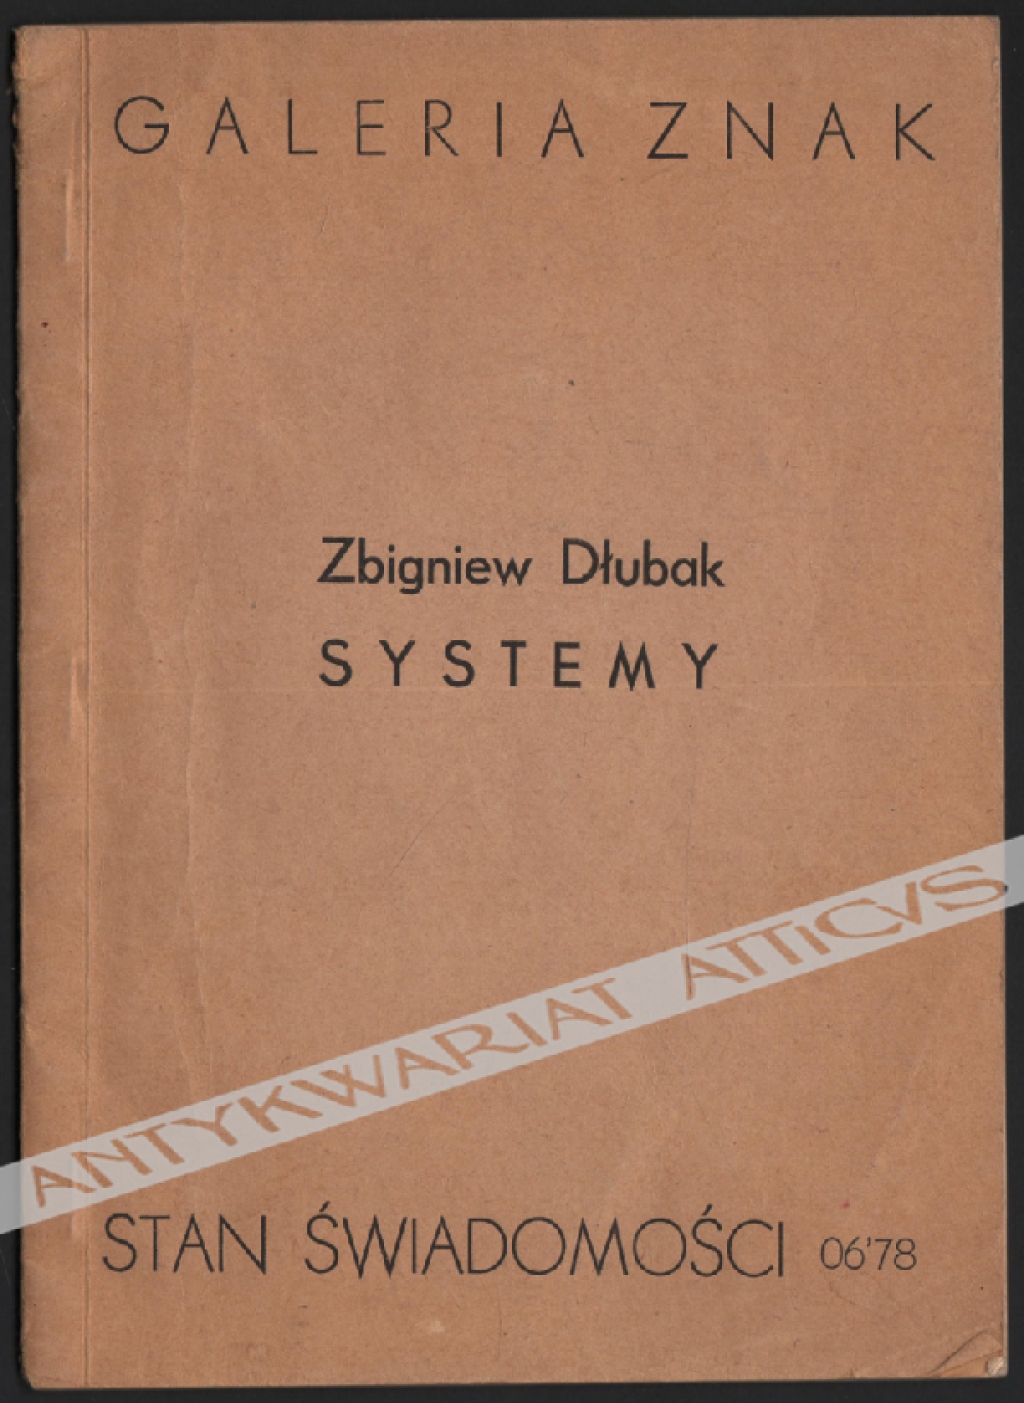 Zbigniew Dłubak - Systemy. Stan świadomości 06'78. Systems. The State of Consciousness